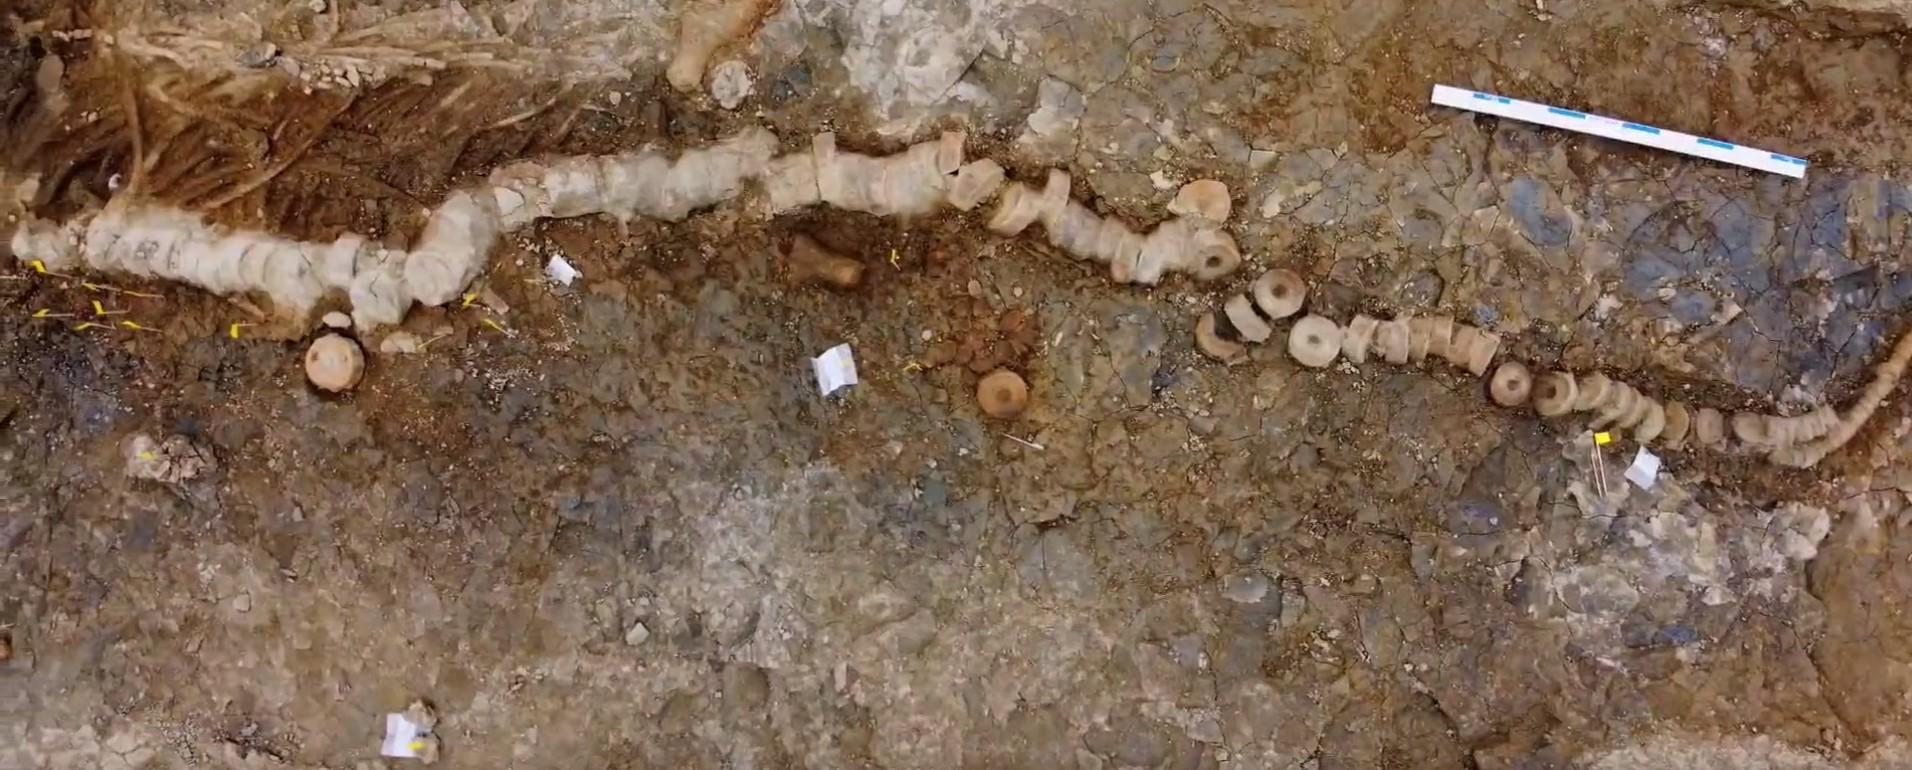 Pogledajte video: U Peruu otkrivena 36 miliona godina stara lobanja morskog čudovišta